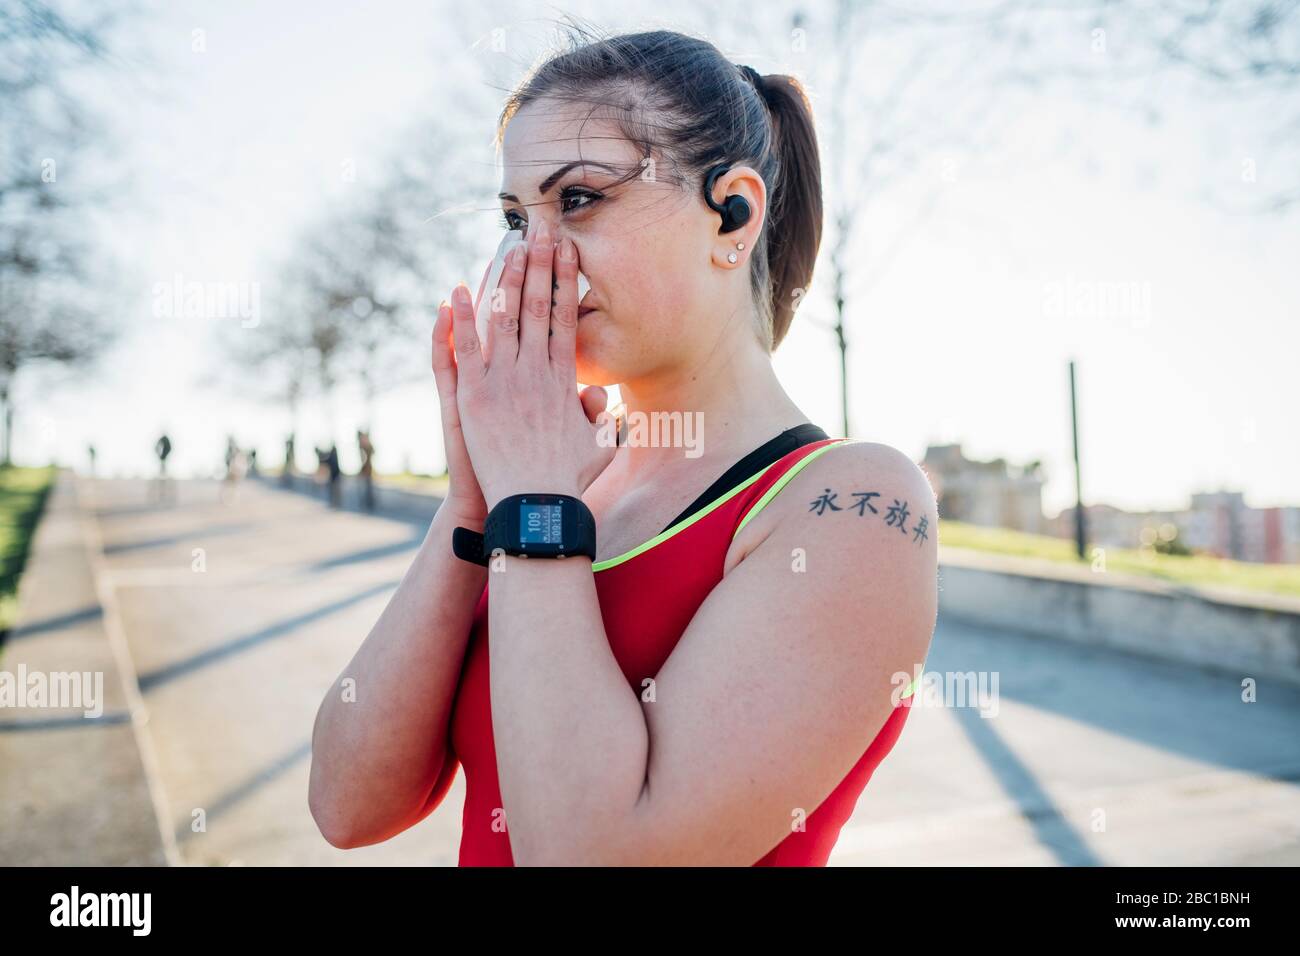 Jeune femme sportive avec écouteurs sans fil soufflant son nez Banque D'Images